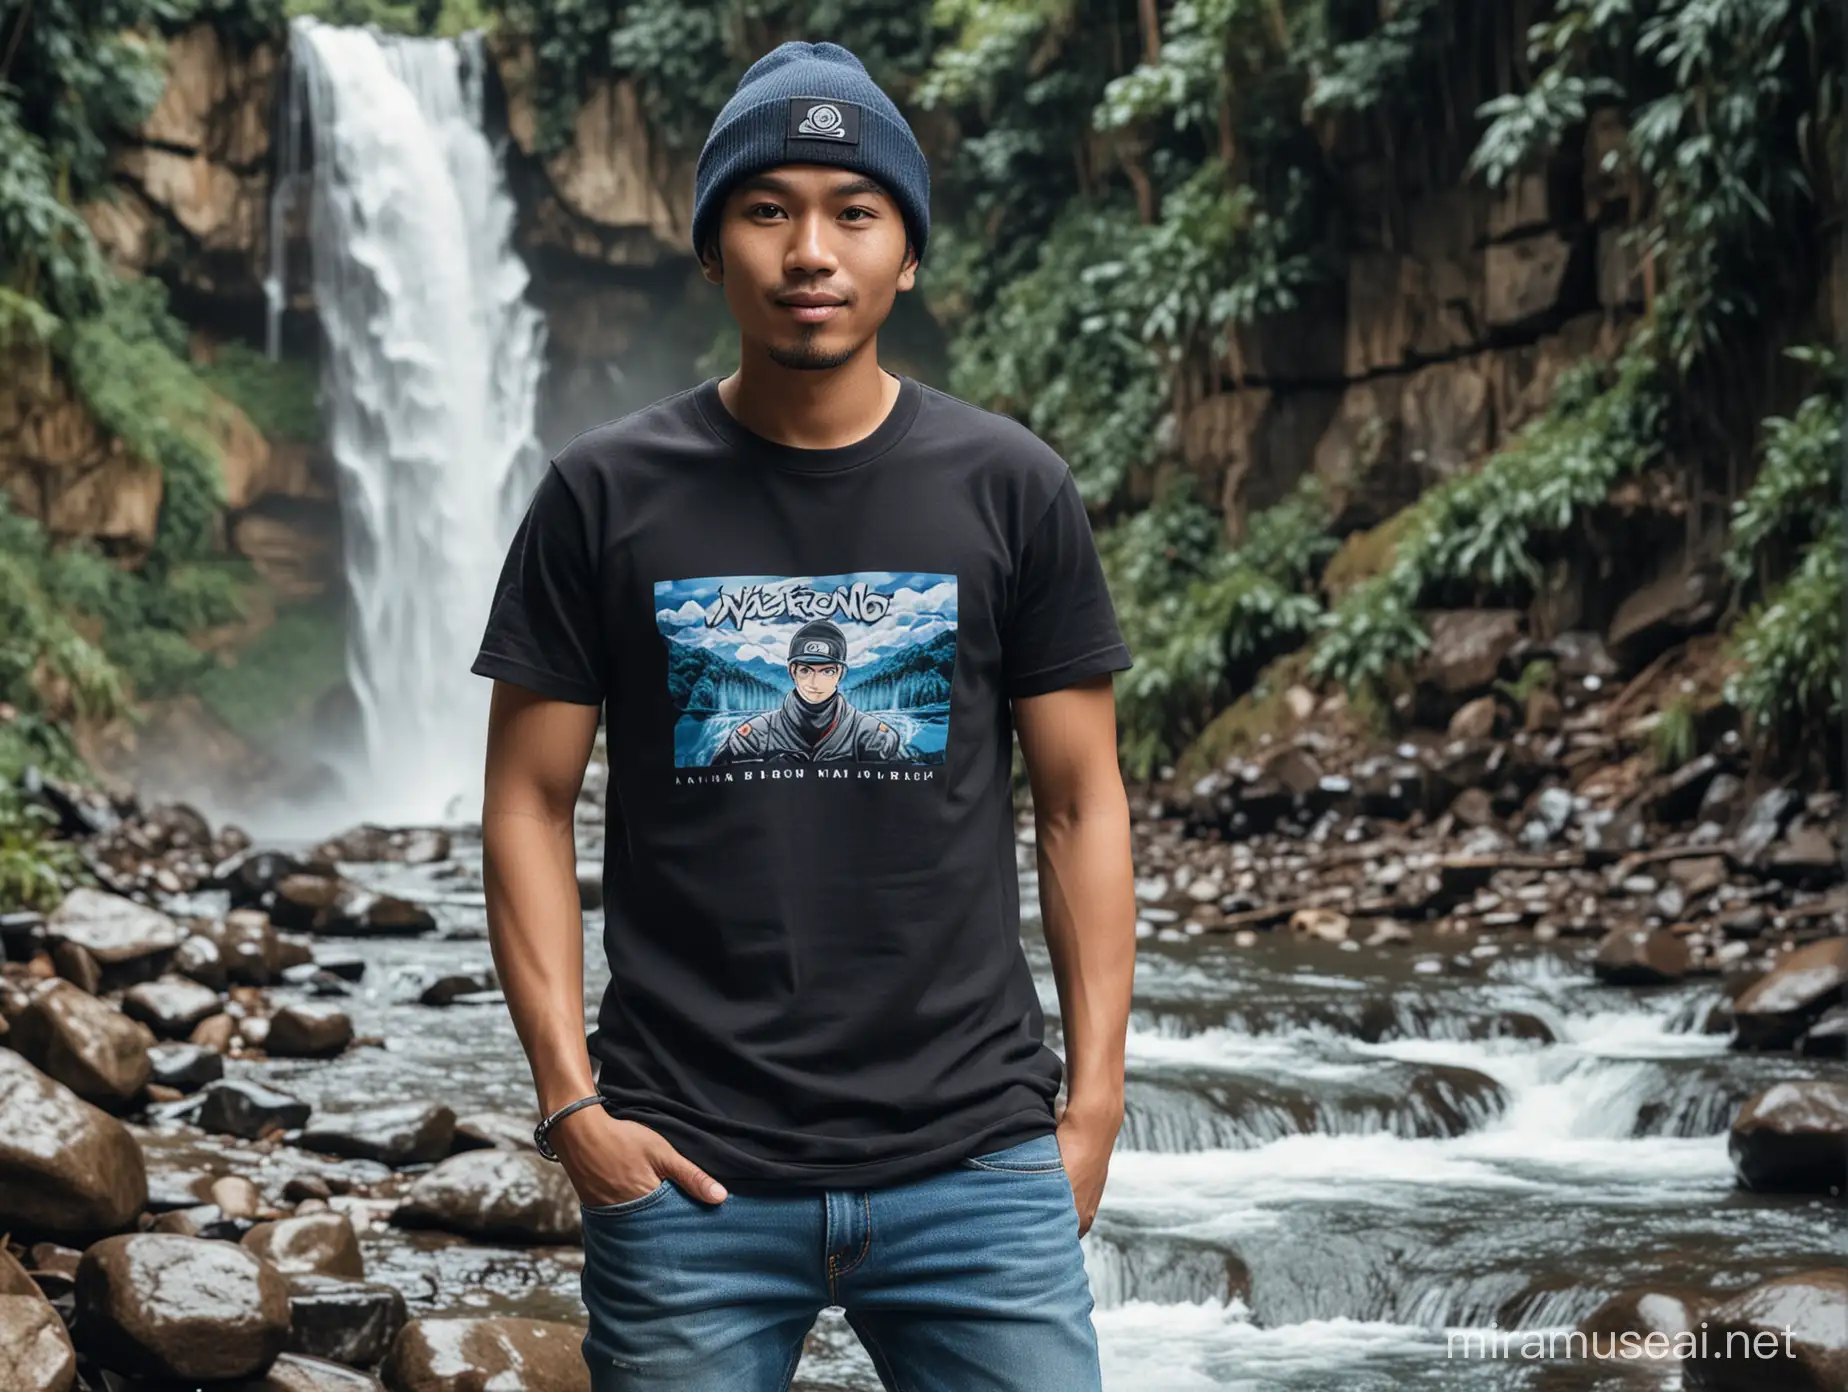 gambar setengah pinggul: Pria indonesia usia 30 tahun memakai beanie hitam berwajah ramah,bergaya menghadap ke depan, baju kaos Naruto.dan celana jeans biru,latar belakang, di aliran sungai di bawah air terjun.